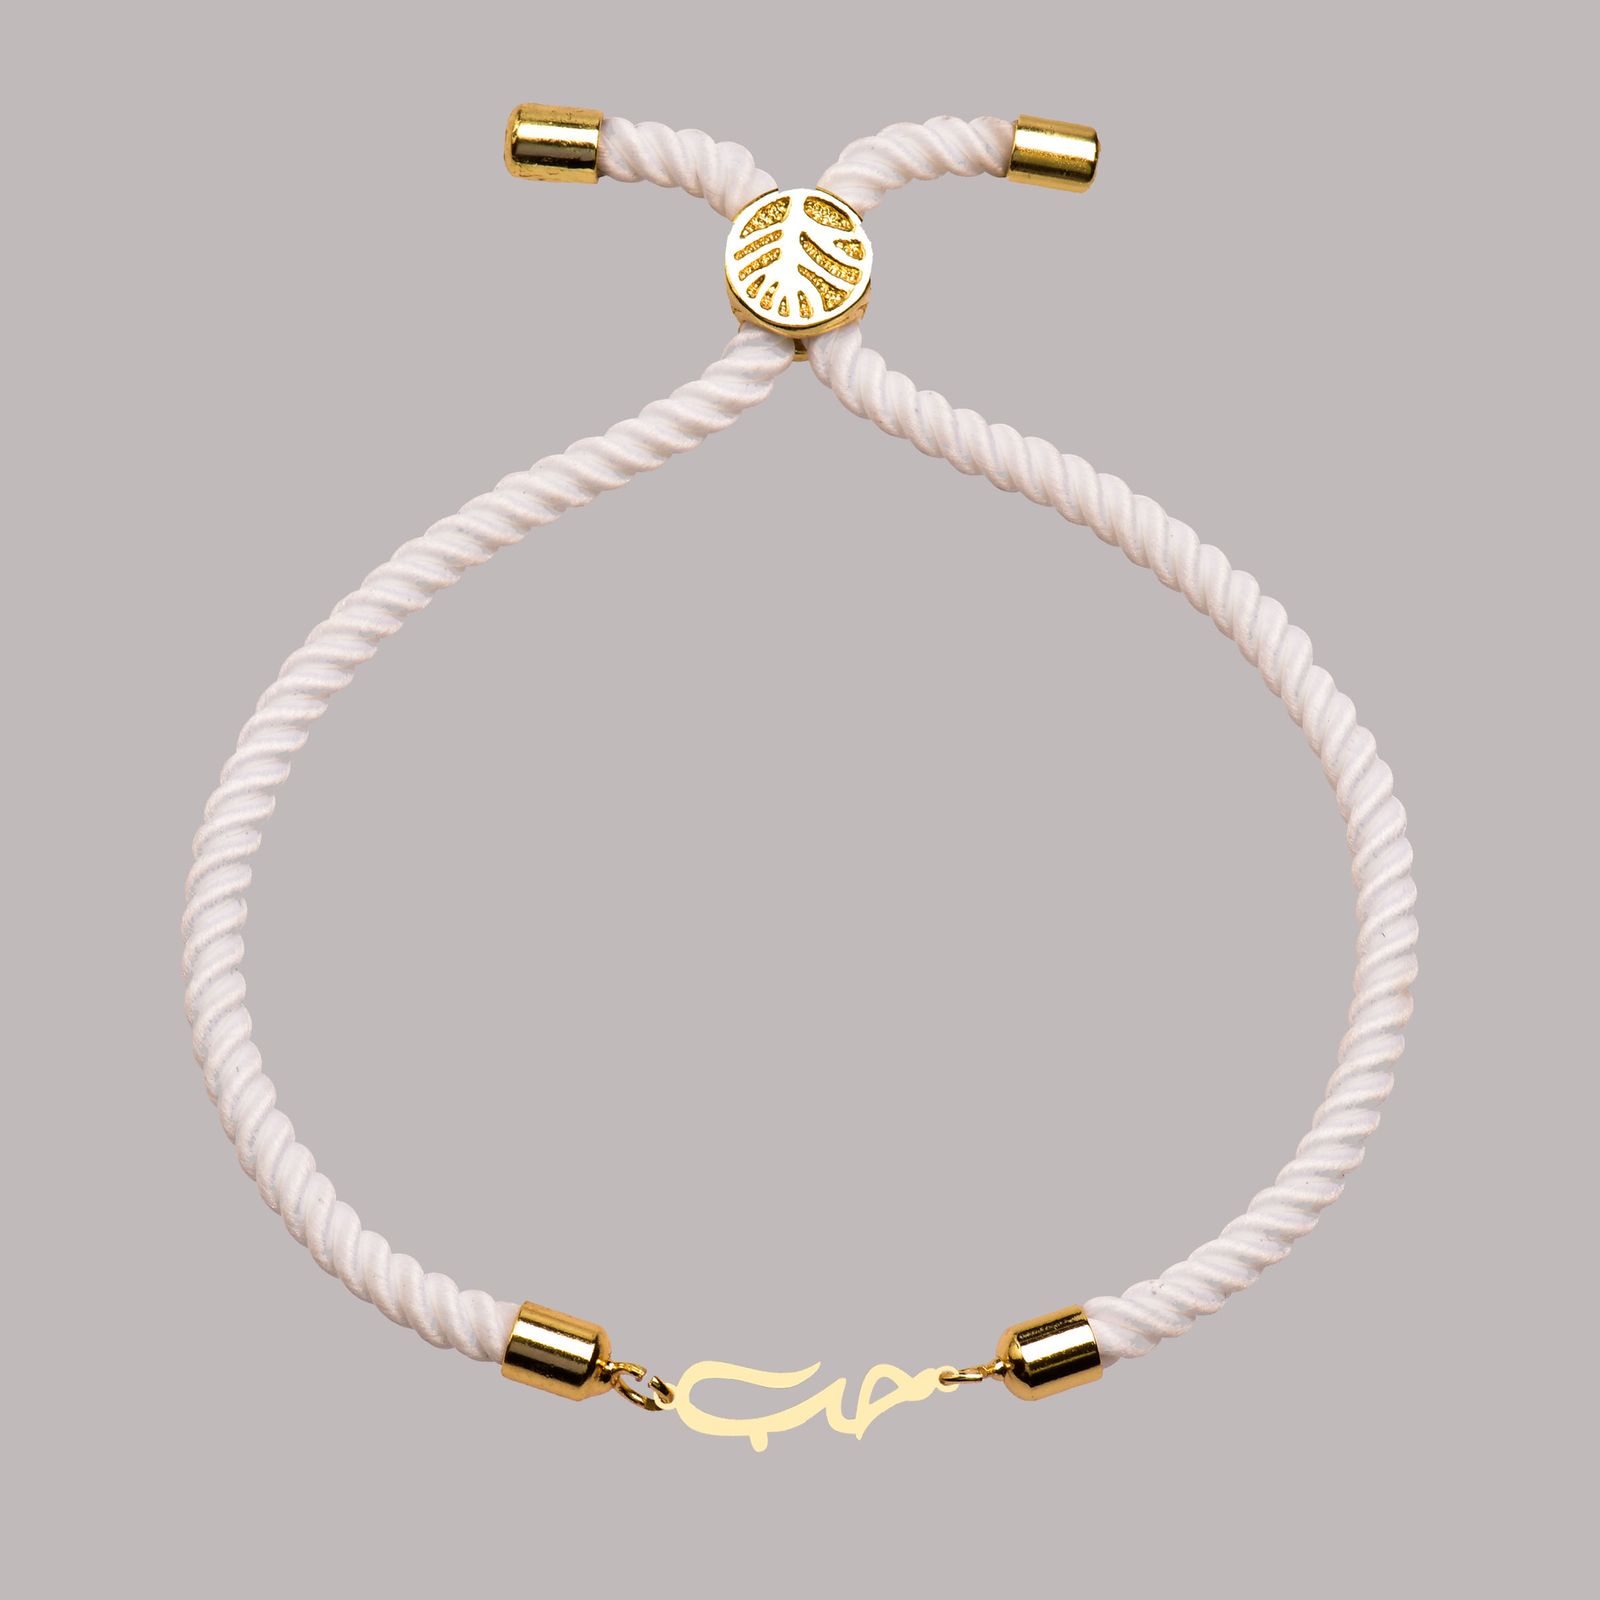 دستبند طلا 18 عیار زنانه کرابو طرح حب مدل Kr102225 -  - 1